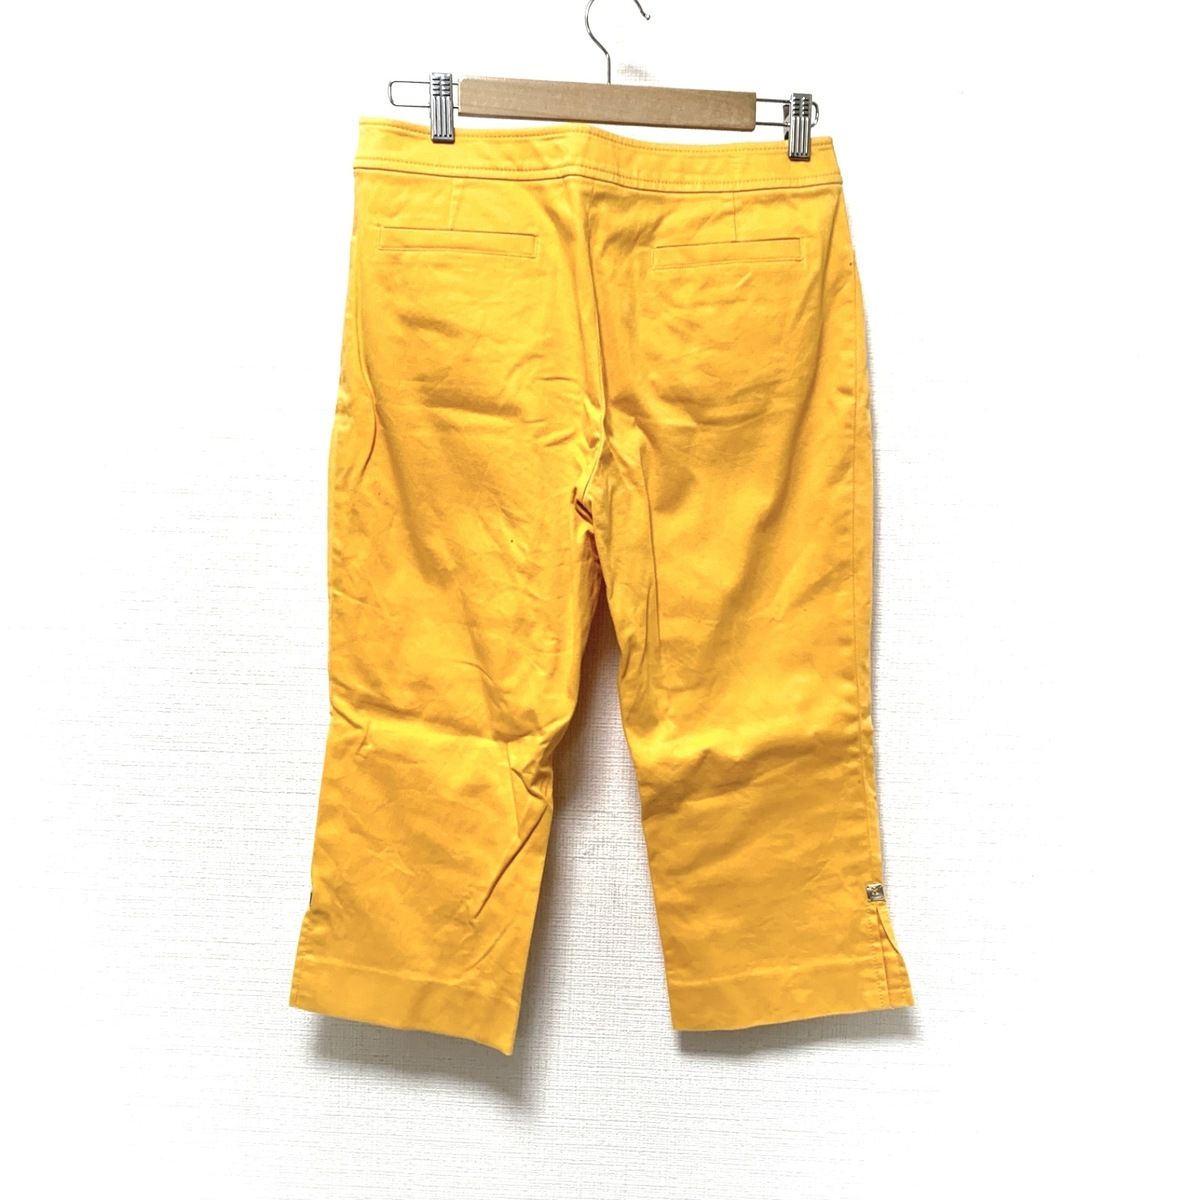 LEONARD(レオナール) パンツ サイズ42 L レディース - オレンジ ...